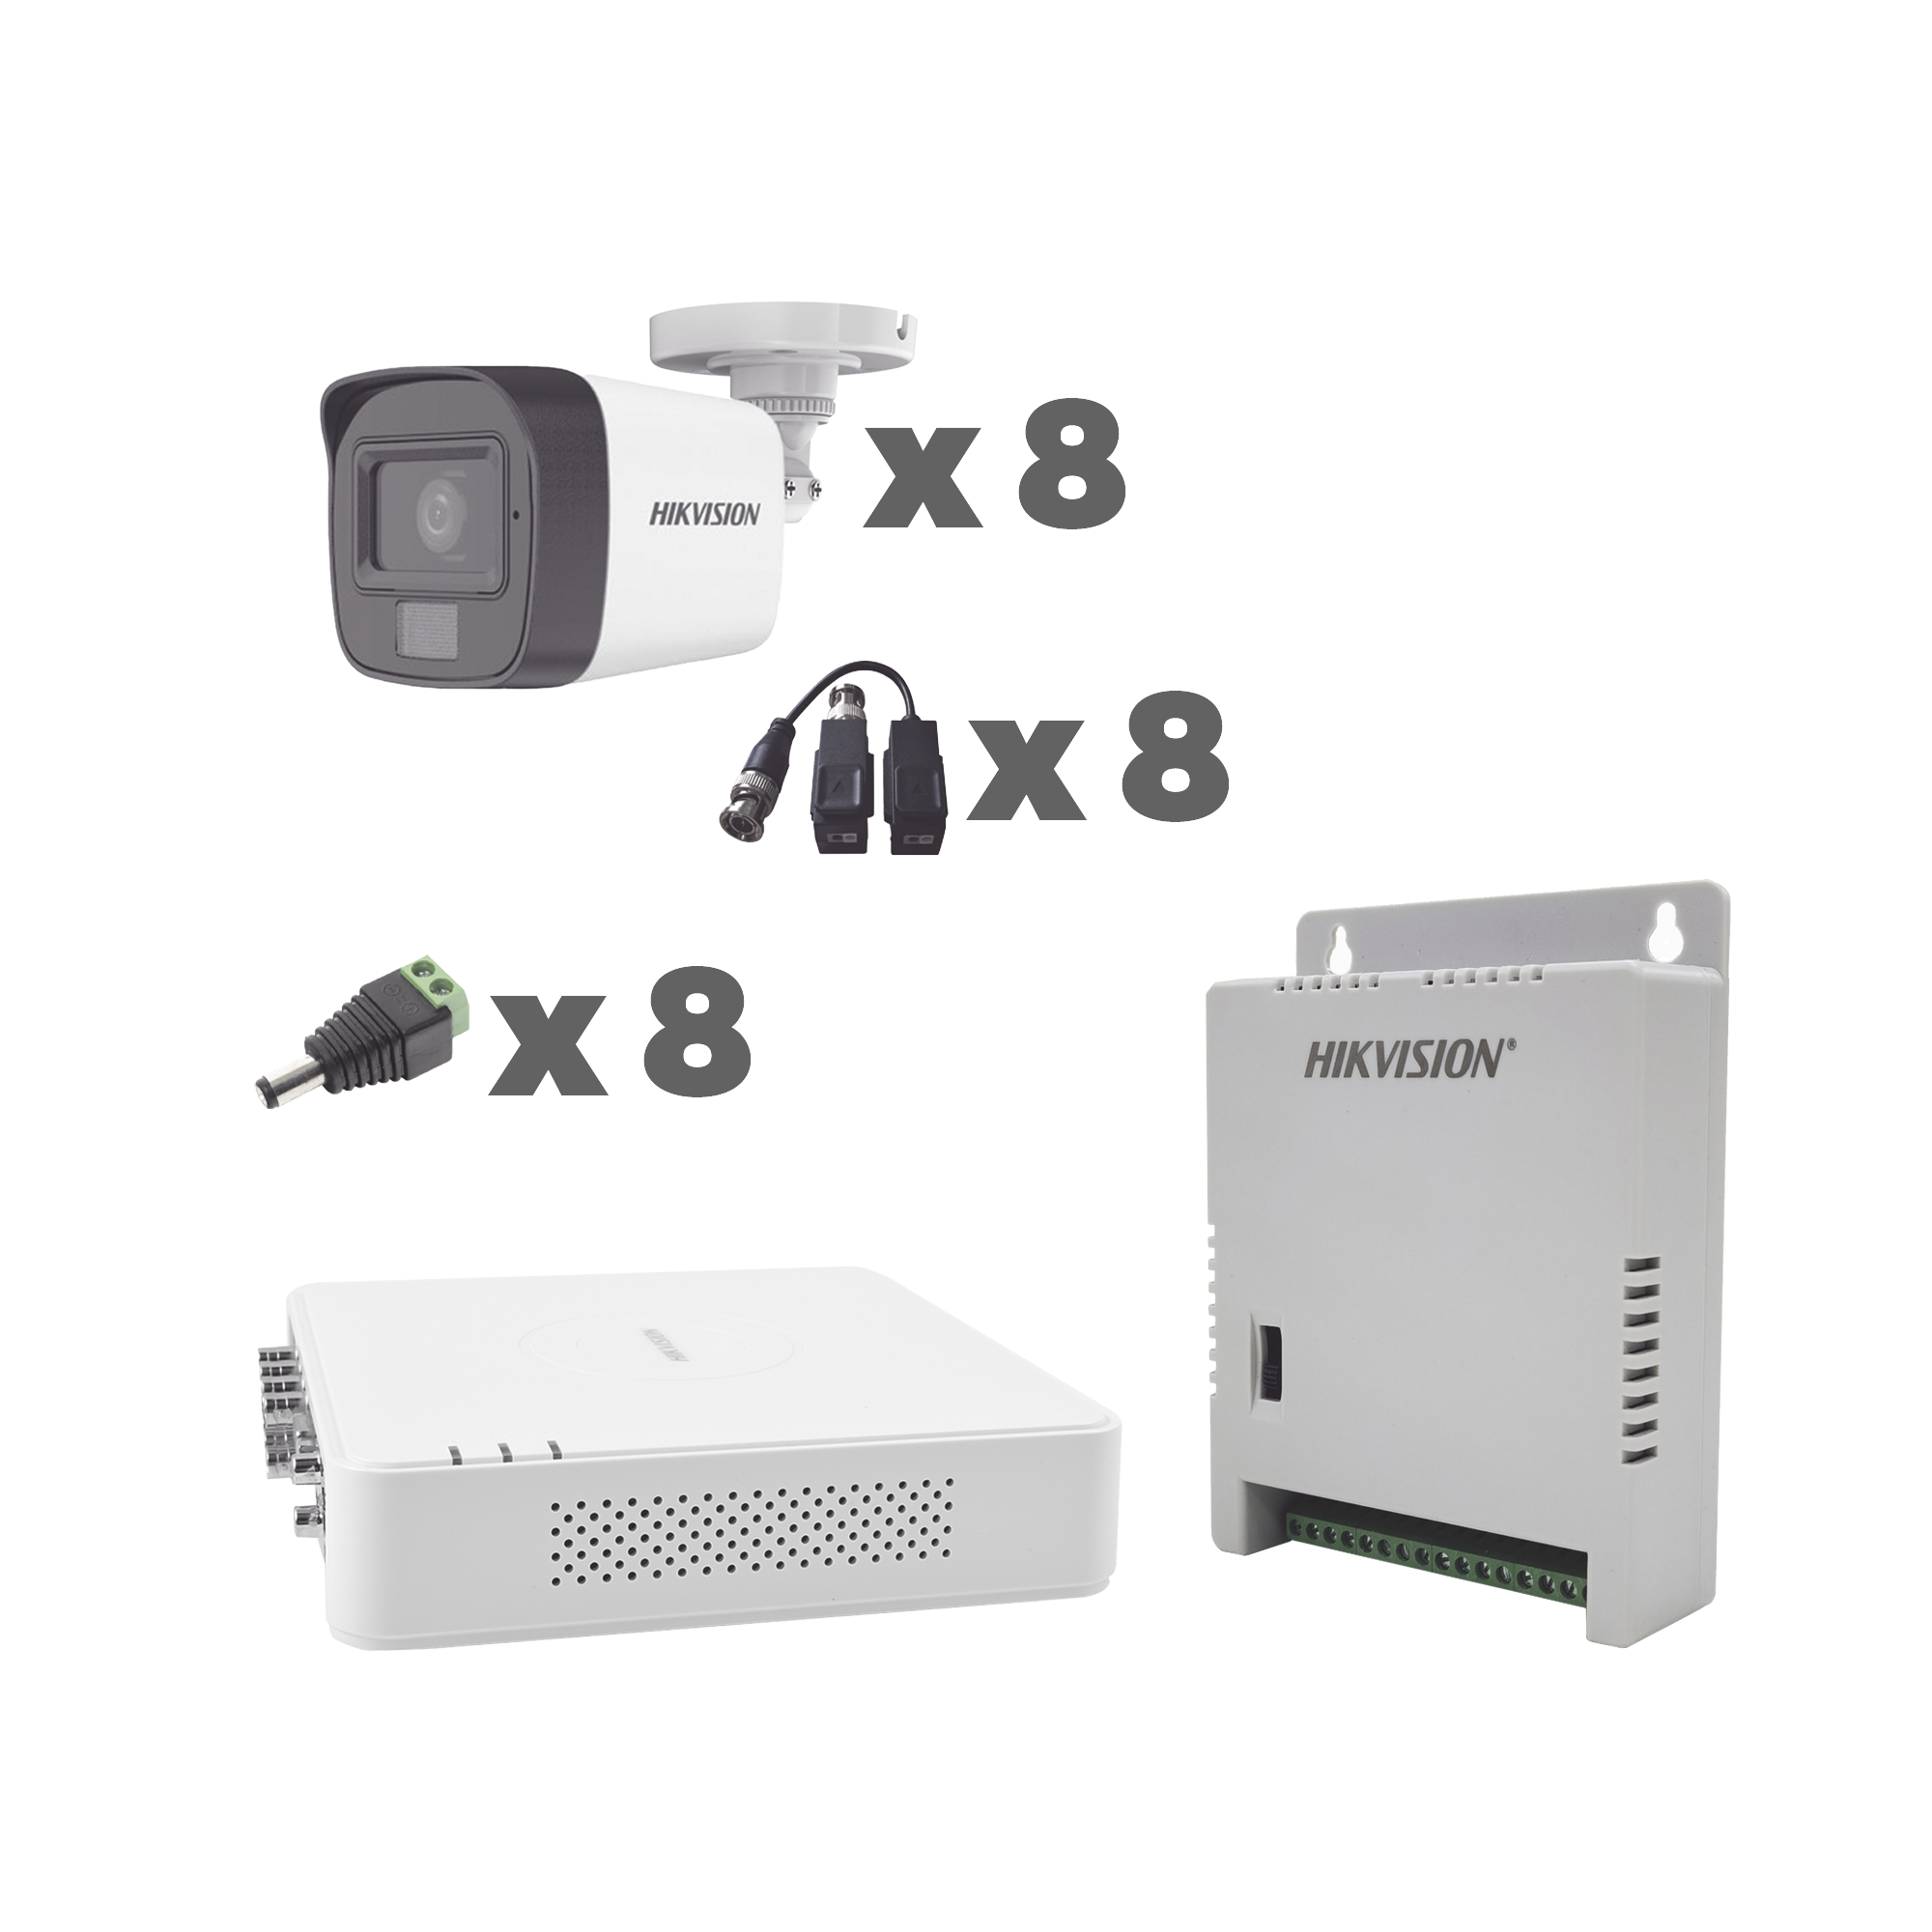 Hikvision Kit cámaras TurboHD 1080p / DVR 8 Canales con audio por coaxitron / 8 Cámaras con Micrófono Integrado 101° Visión/  luz blanca + IR visión nocturna  / Transceptores / Conectores / Fuente de Poder Profesional